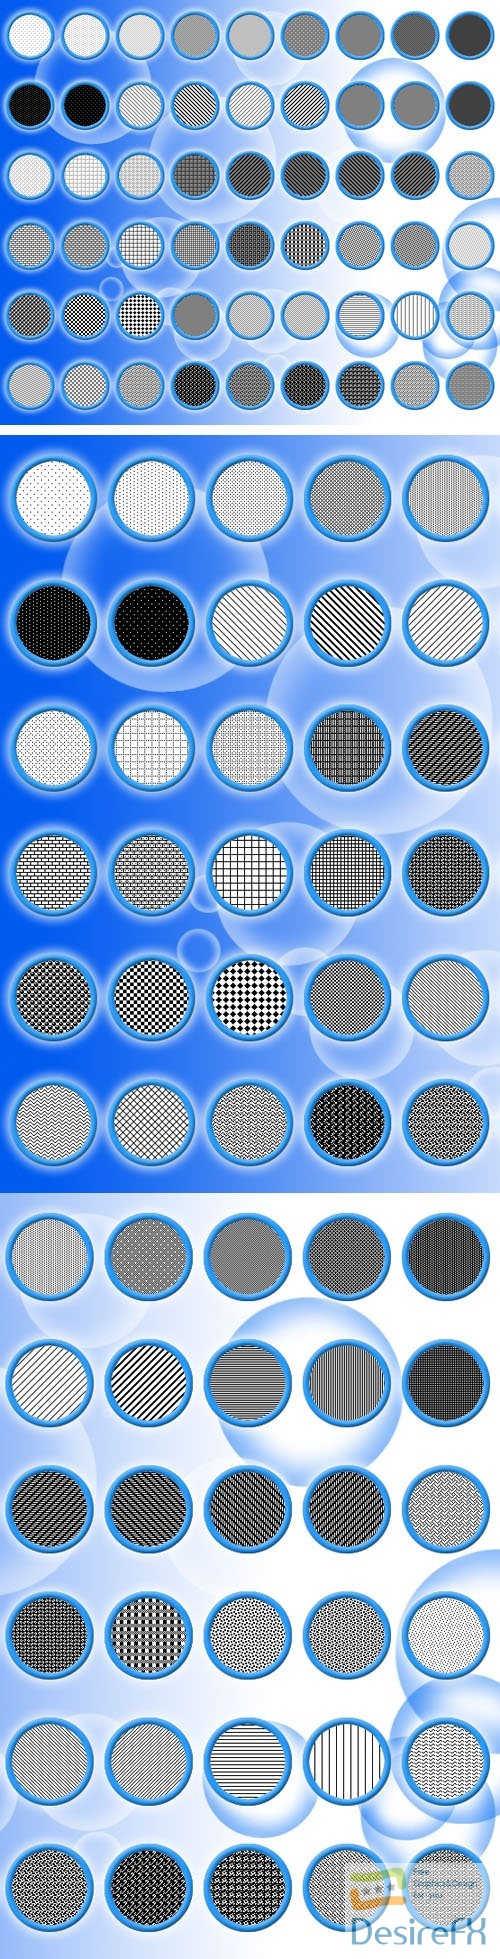 Pixel Pattern Pack - 54 Pixel Patterns